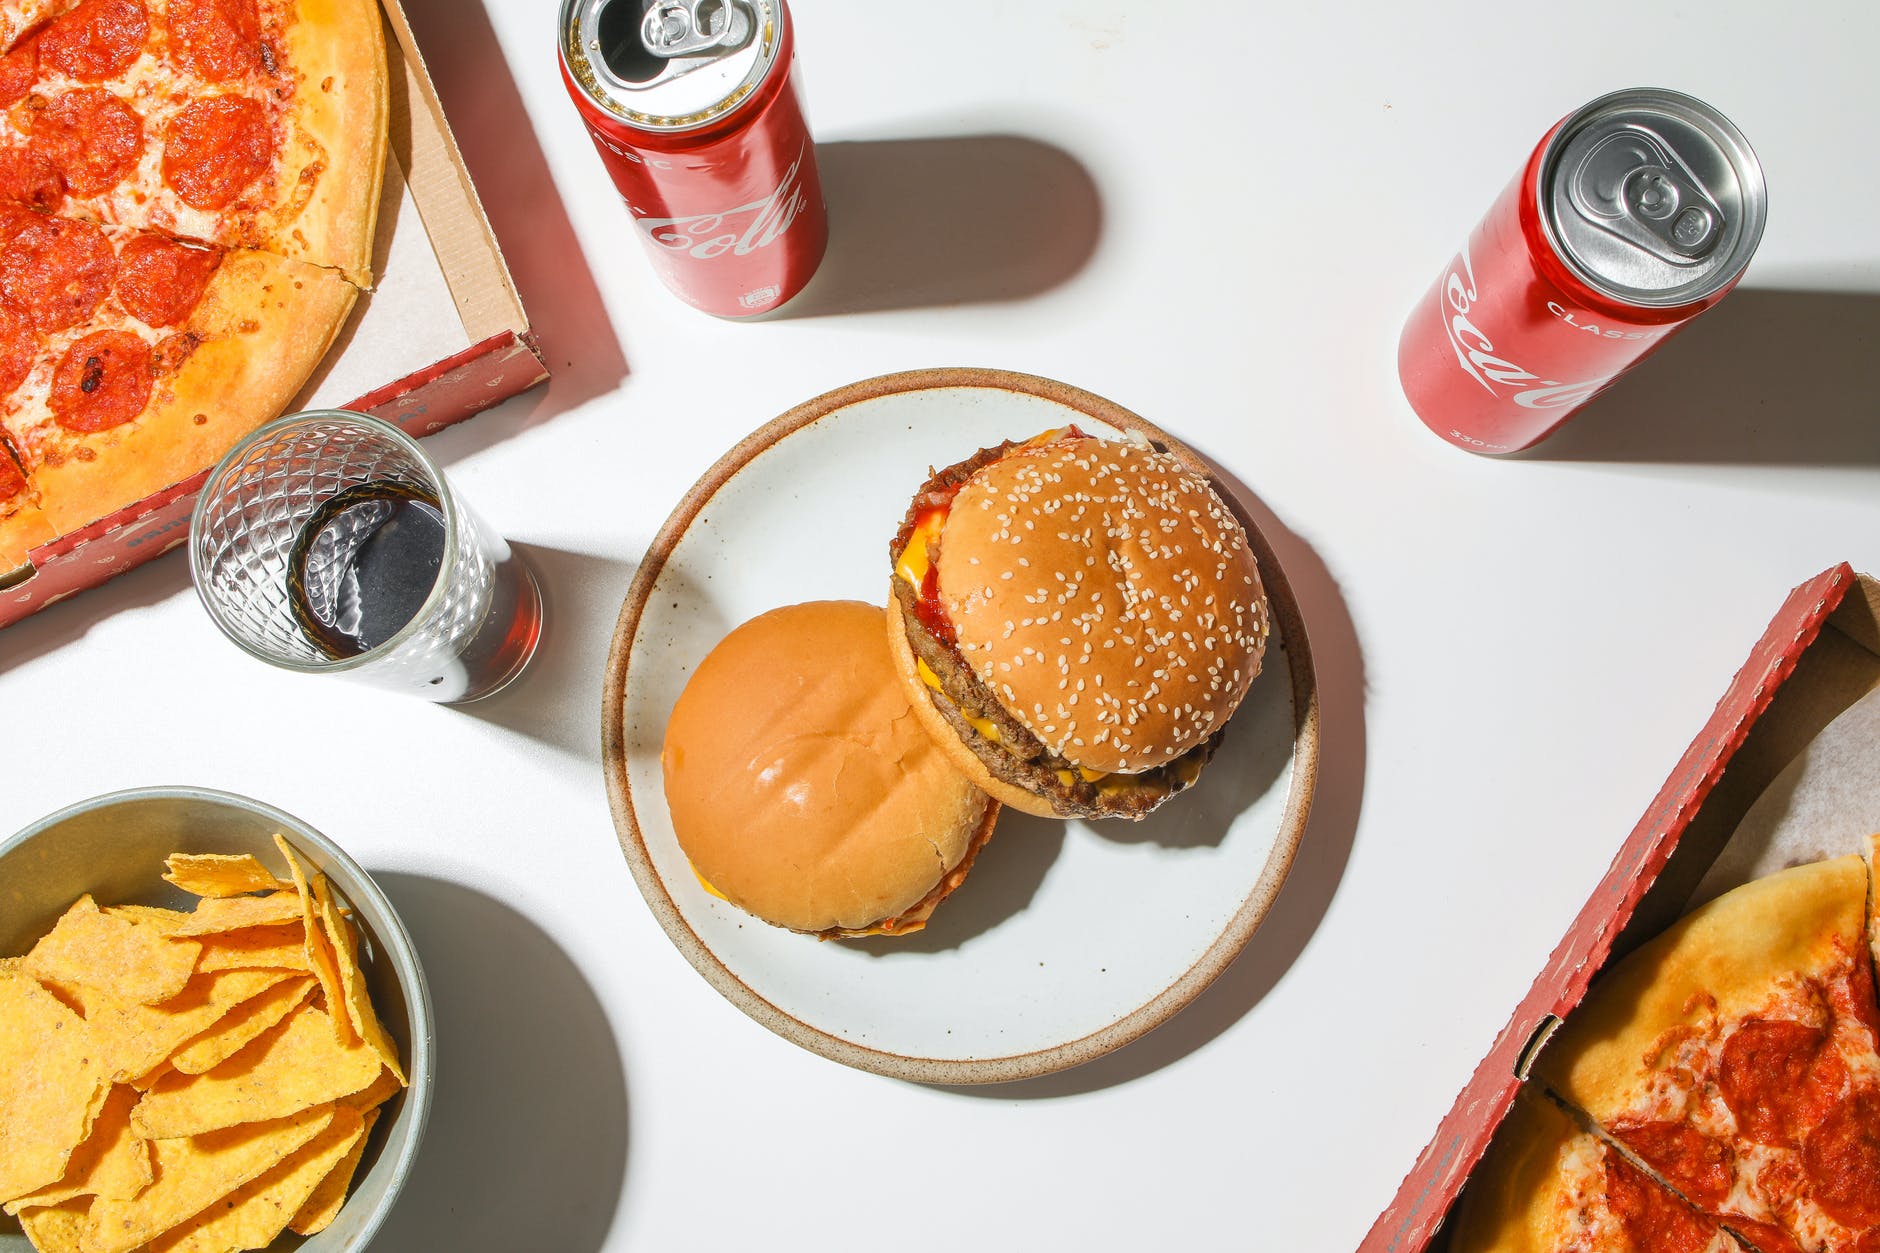 Qual a opção irá gerar menos prejuízos à saúde: Pizza ou hambúrguer?